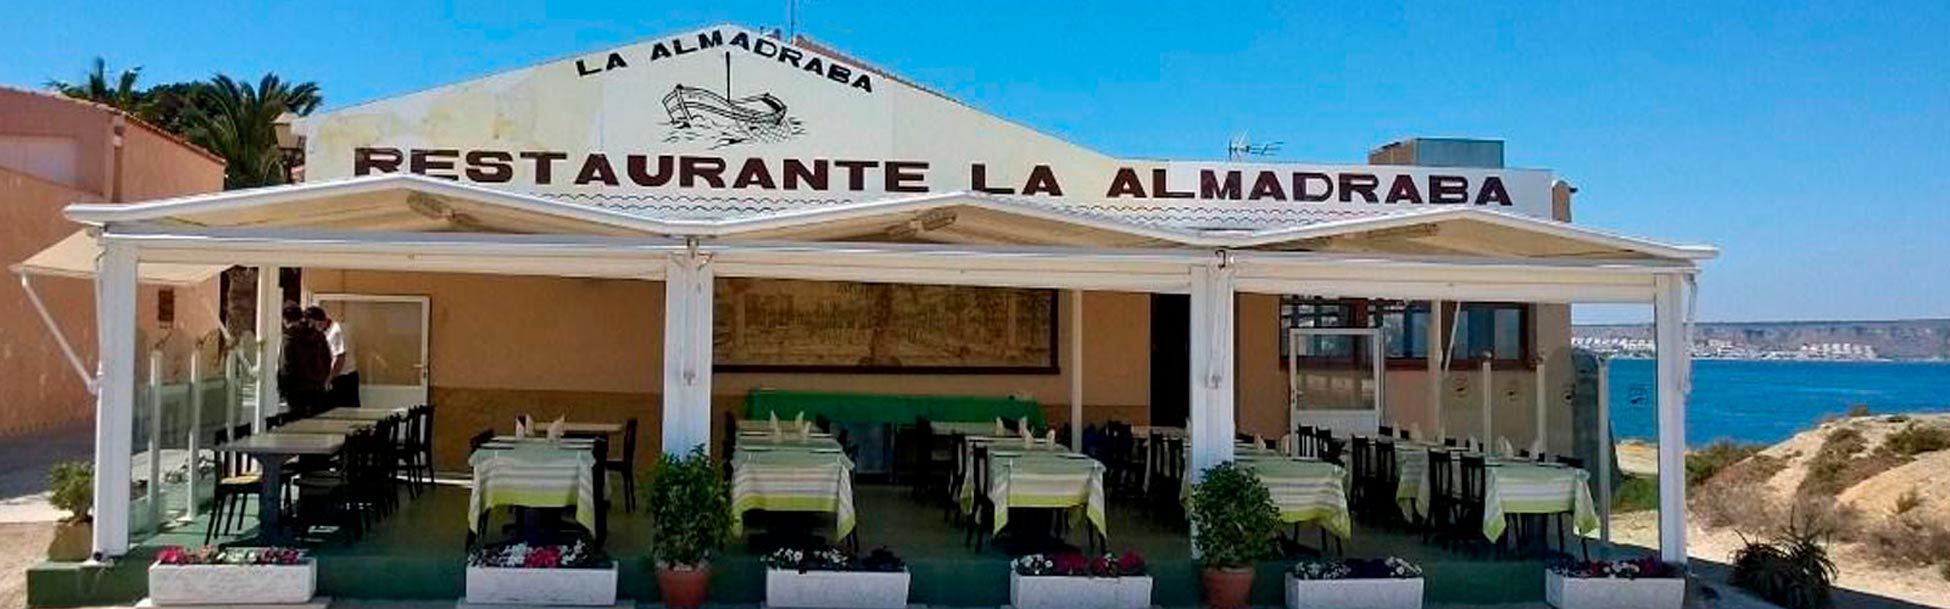 Restaurante La Almadraba banner 3